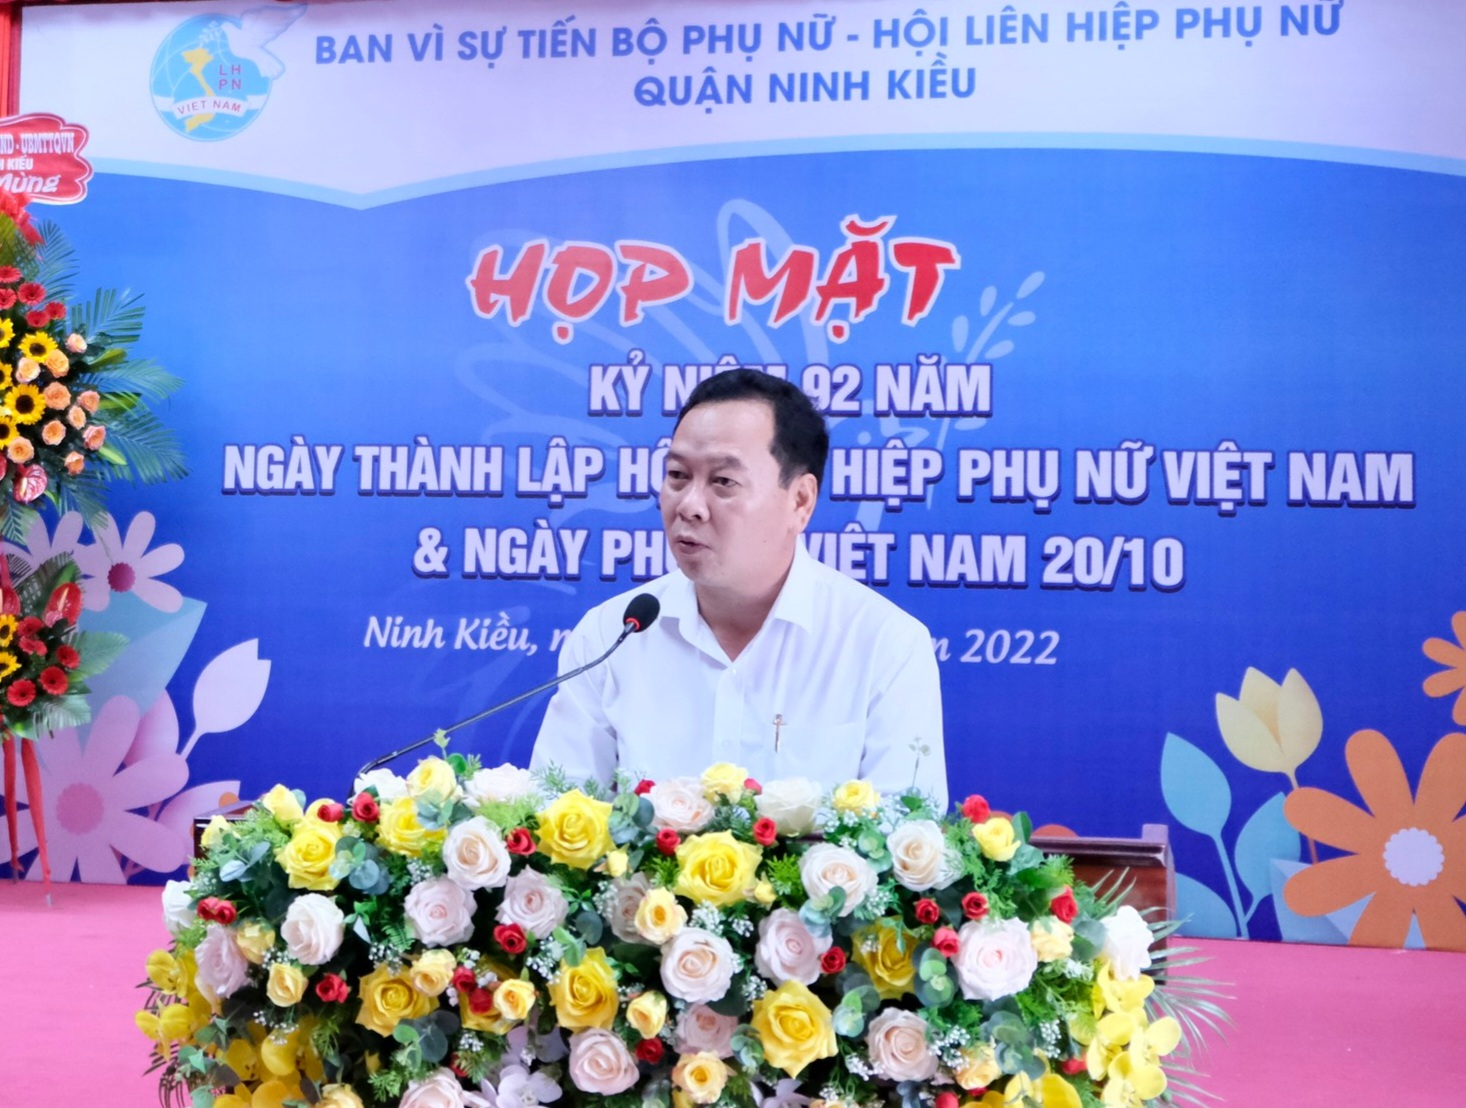 Ông Nguyễn Ngọc Ánh - Ủy viên ban Thường vụ Quận ủy - Phó Chủ tịch Thường trực Ủy Ban nhân dân quận – Trưởng Ban vì sự tiến bộ phụ nữ quận Ninh Kiều phát biểu tại buổi họp mặt.